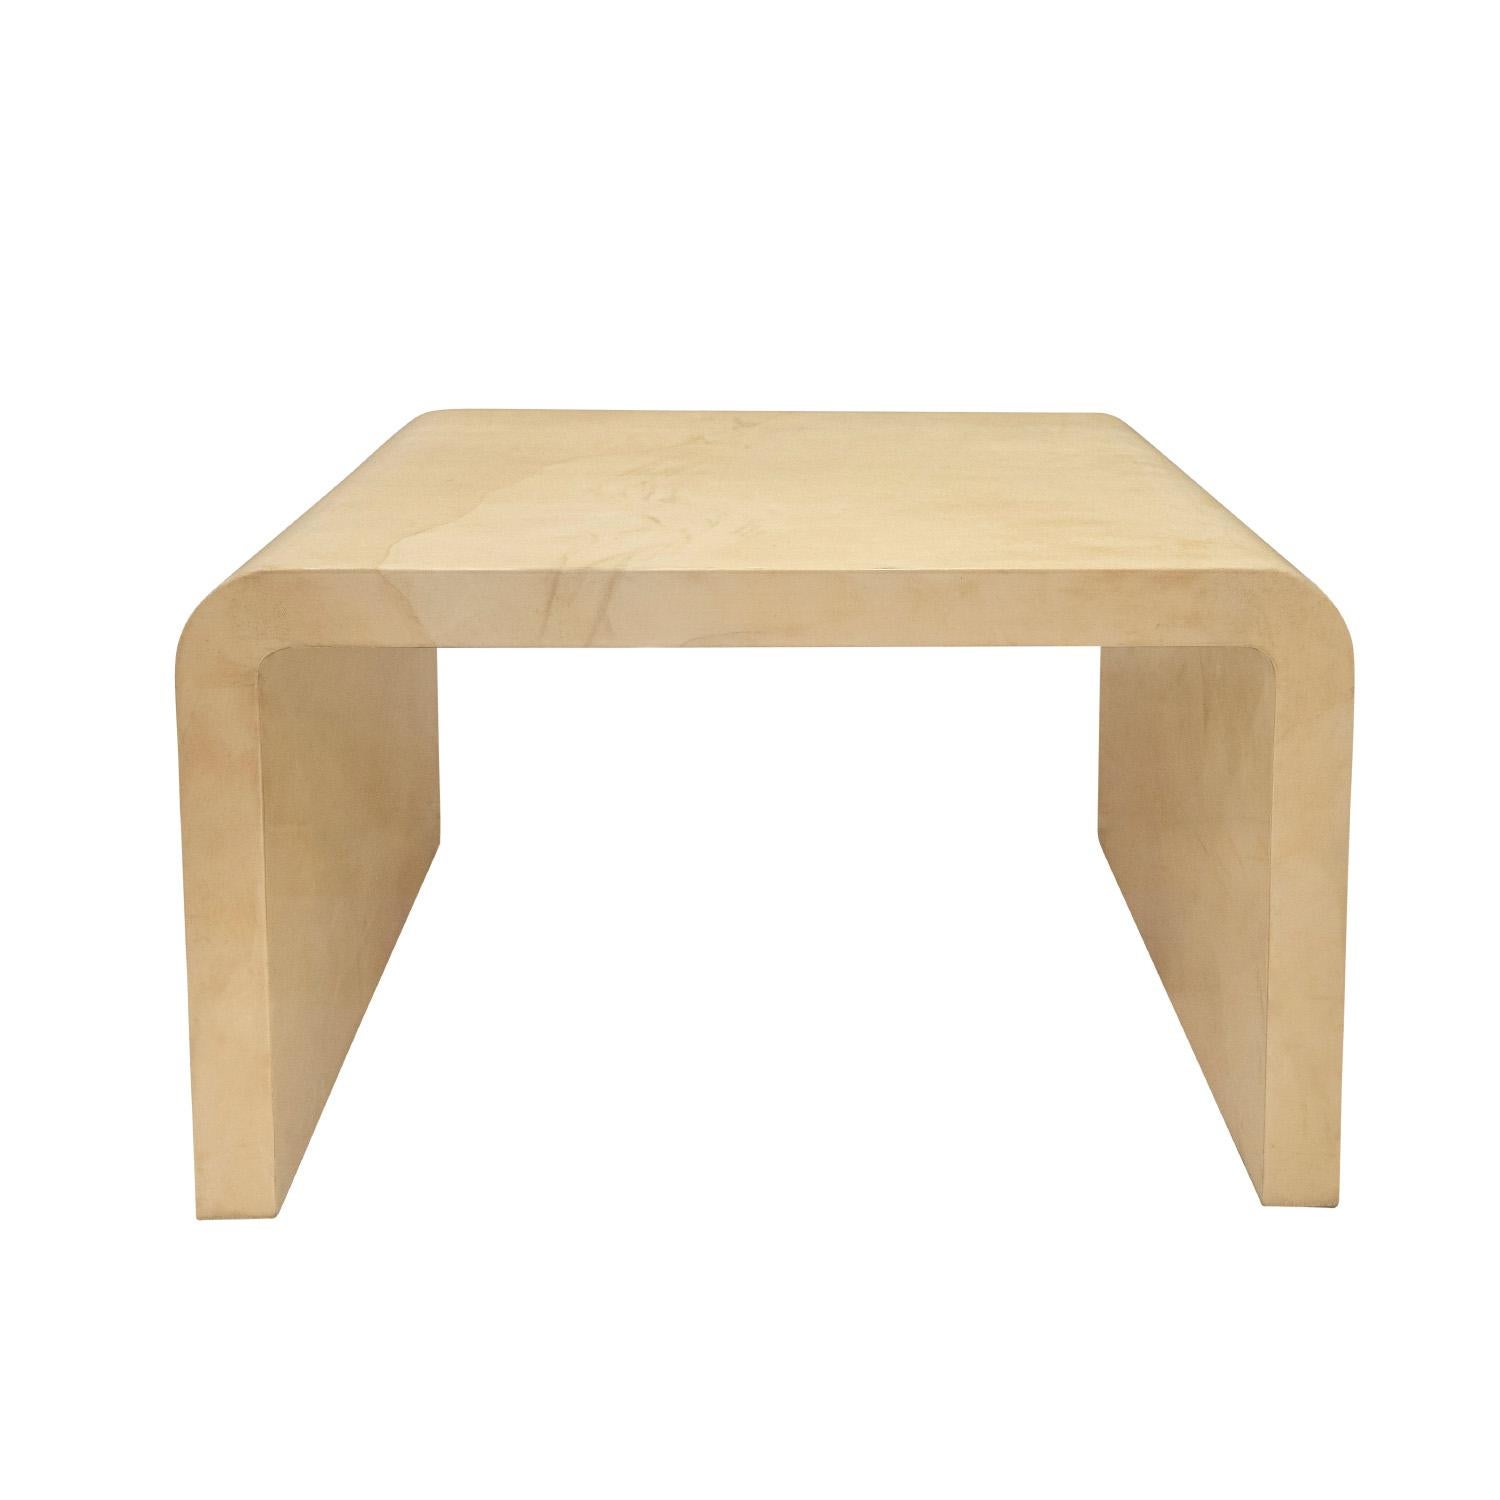 Petite table basse iconique au design en cascade en peau de chèvre laquée par Karl Springer, américain des années 1980. La qualité des matériaux et de l'artisanat est superbe. N'attendez rien d'autre de Karl Springer.